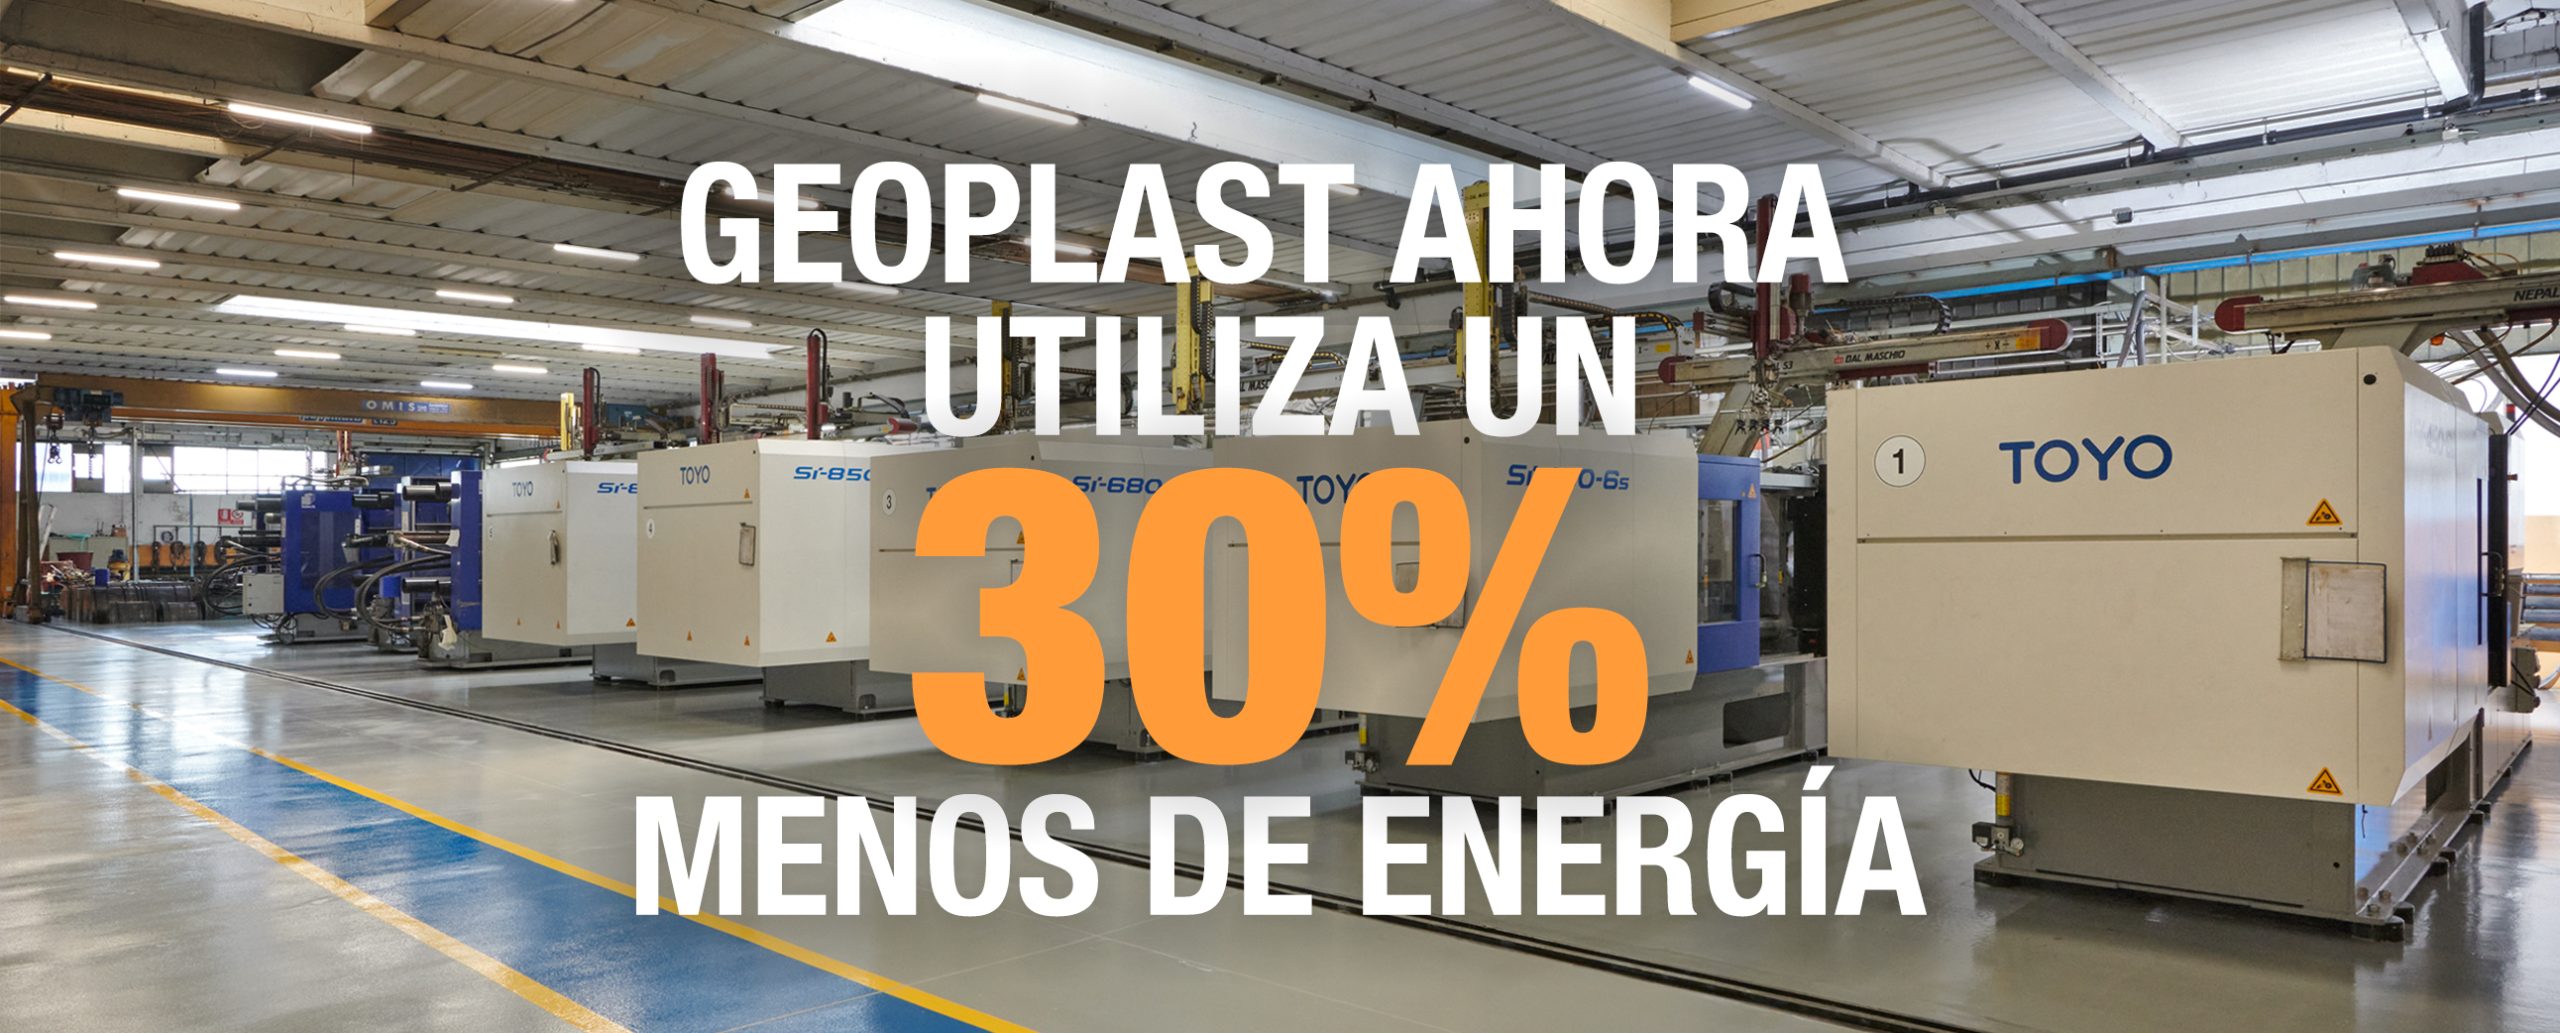 Los productos fabricados de Geoplast reducen las necesidades energéticas en un 30% con máquinas totalmente eléctricas